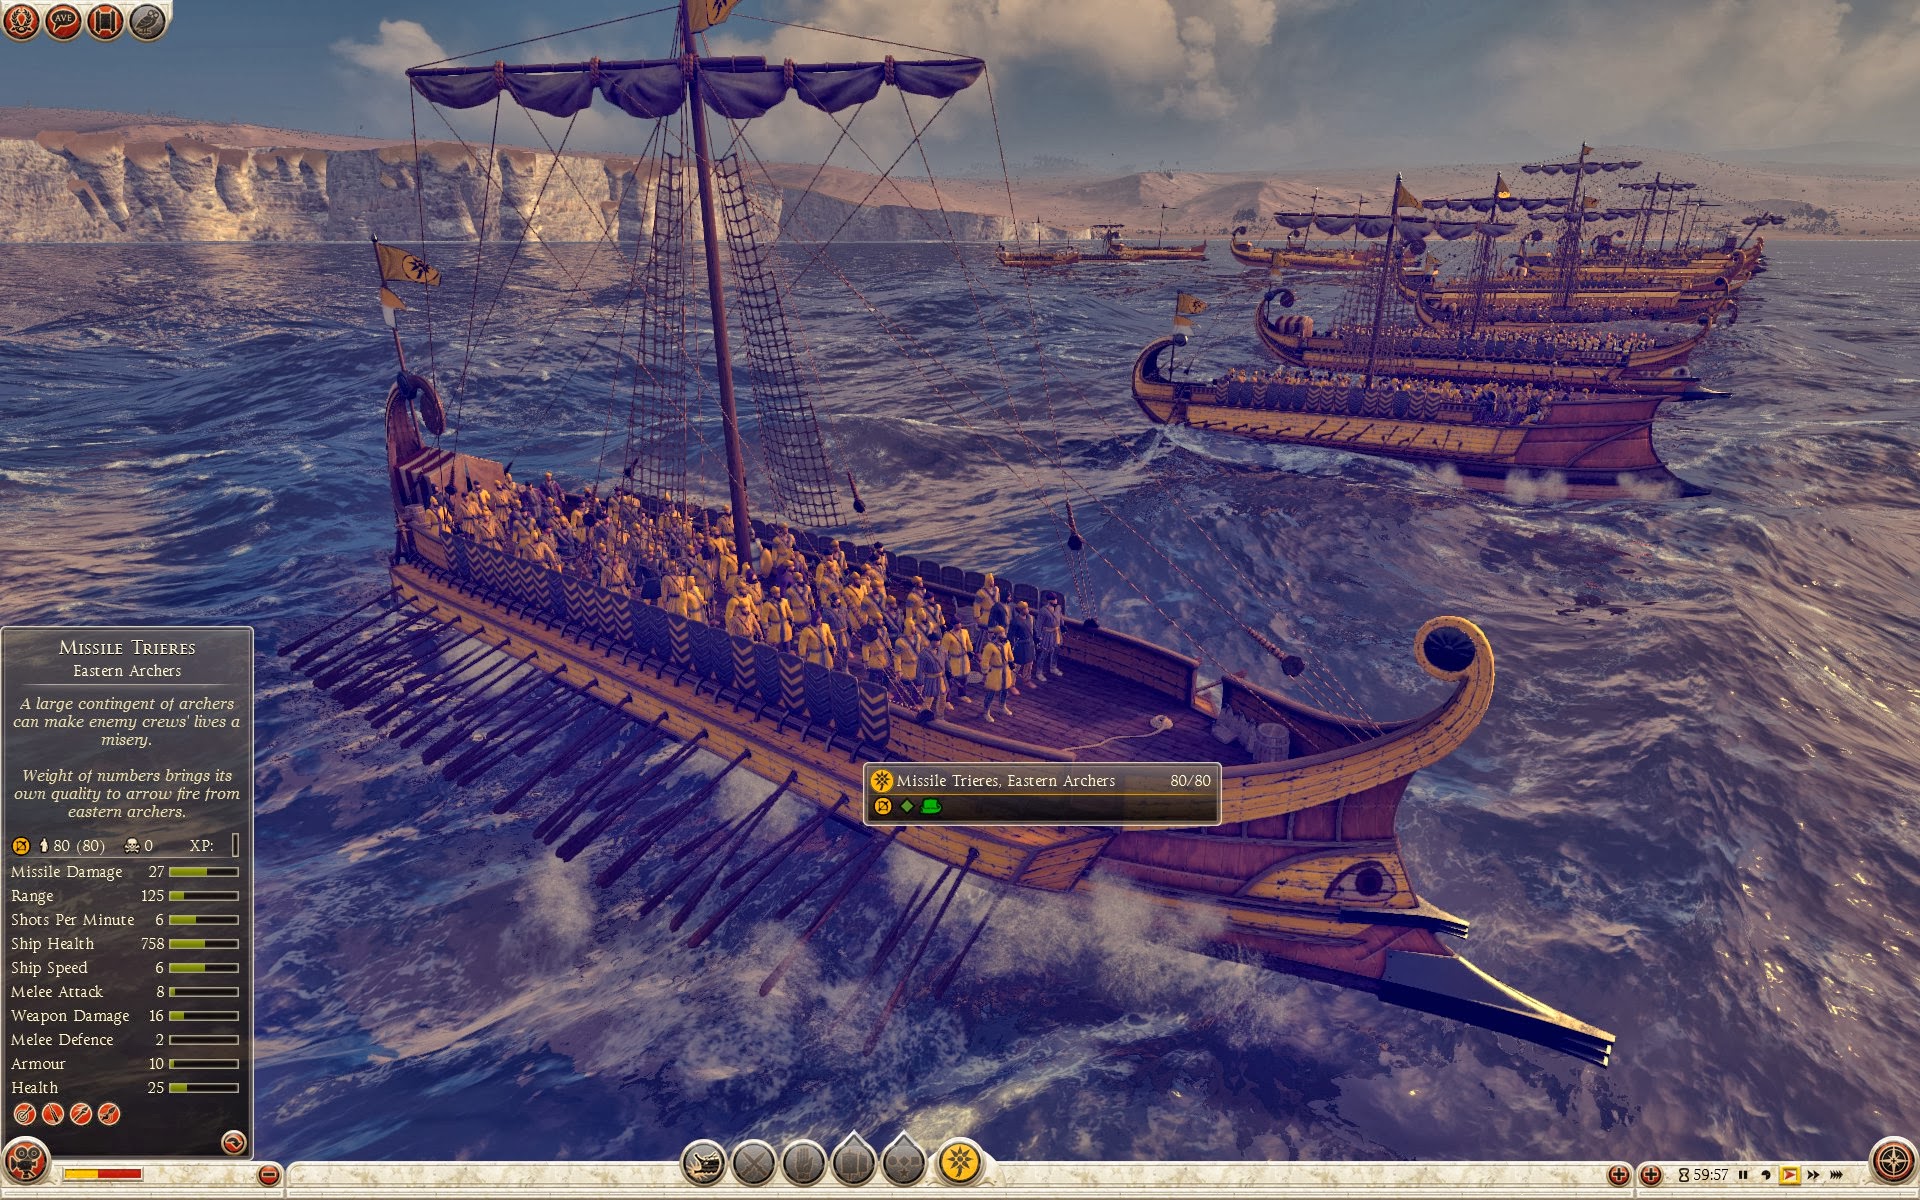 三排漿座大型弓箭船 - 東羅馬弓箭兵